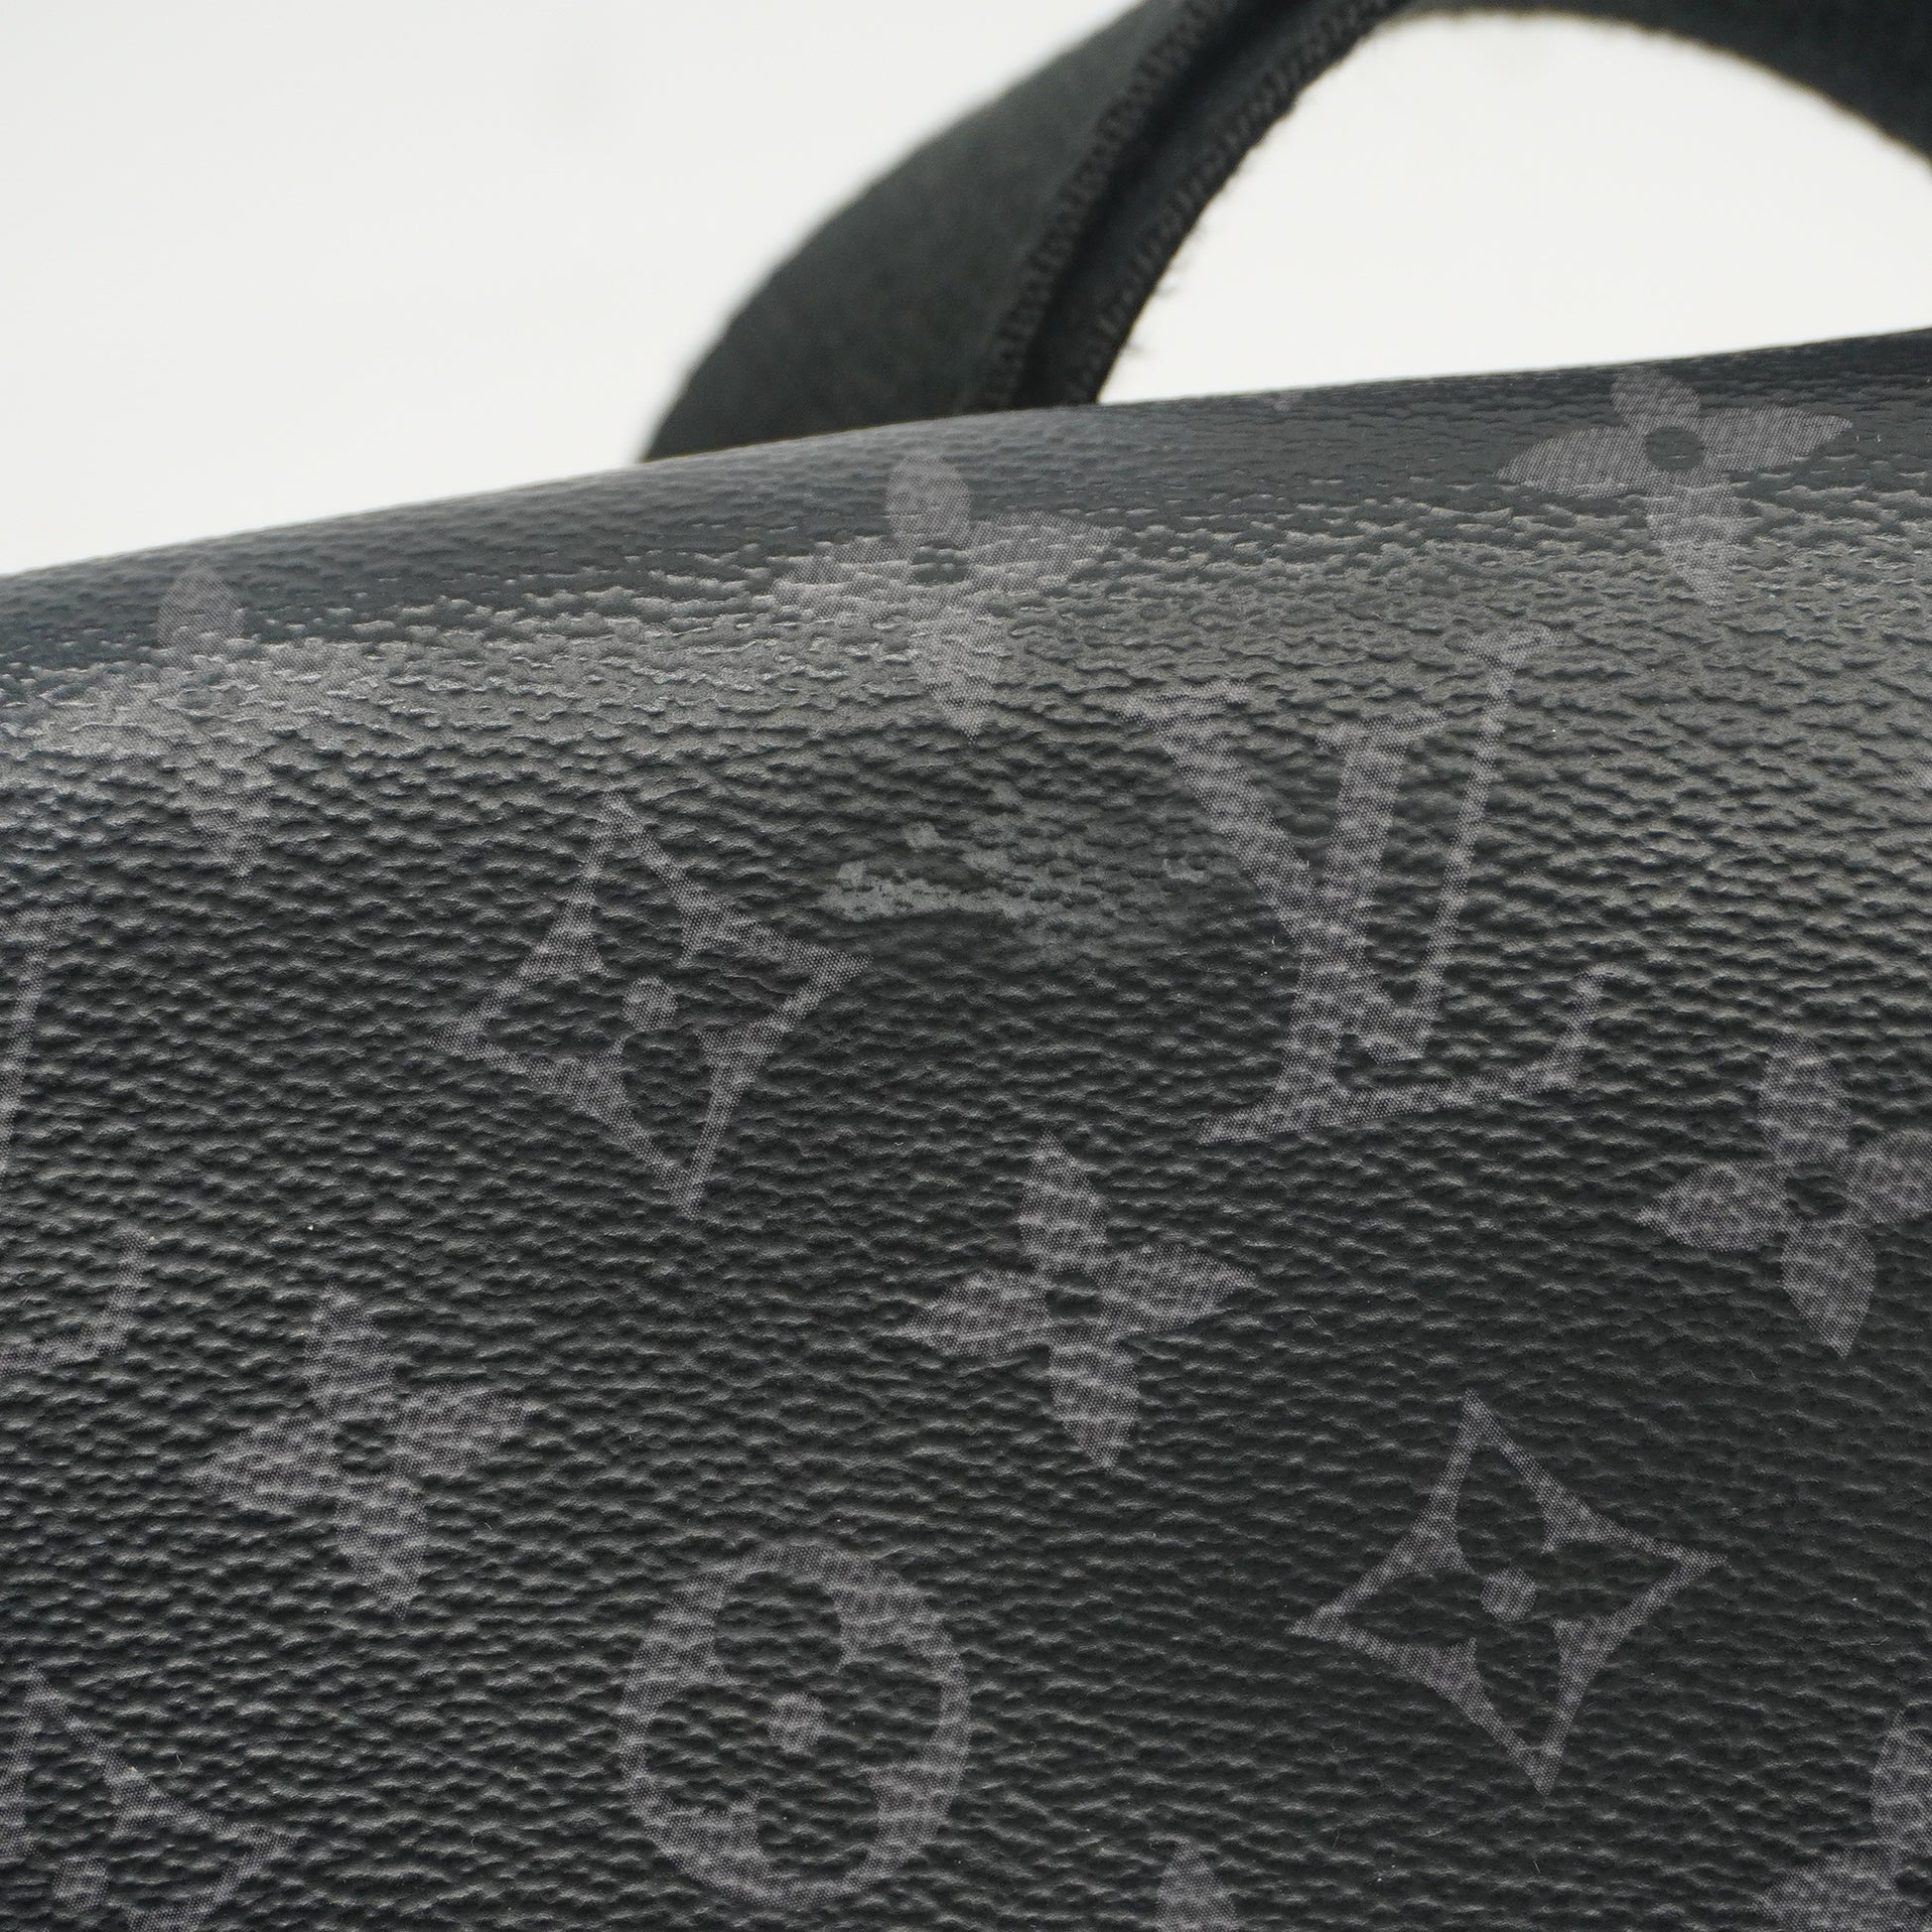 Auth Louis Vuitton Monogram Eclipse District PM M44000 Men's Shoulder Bag